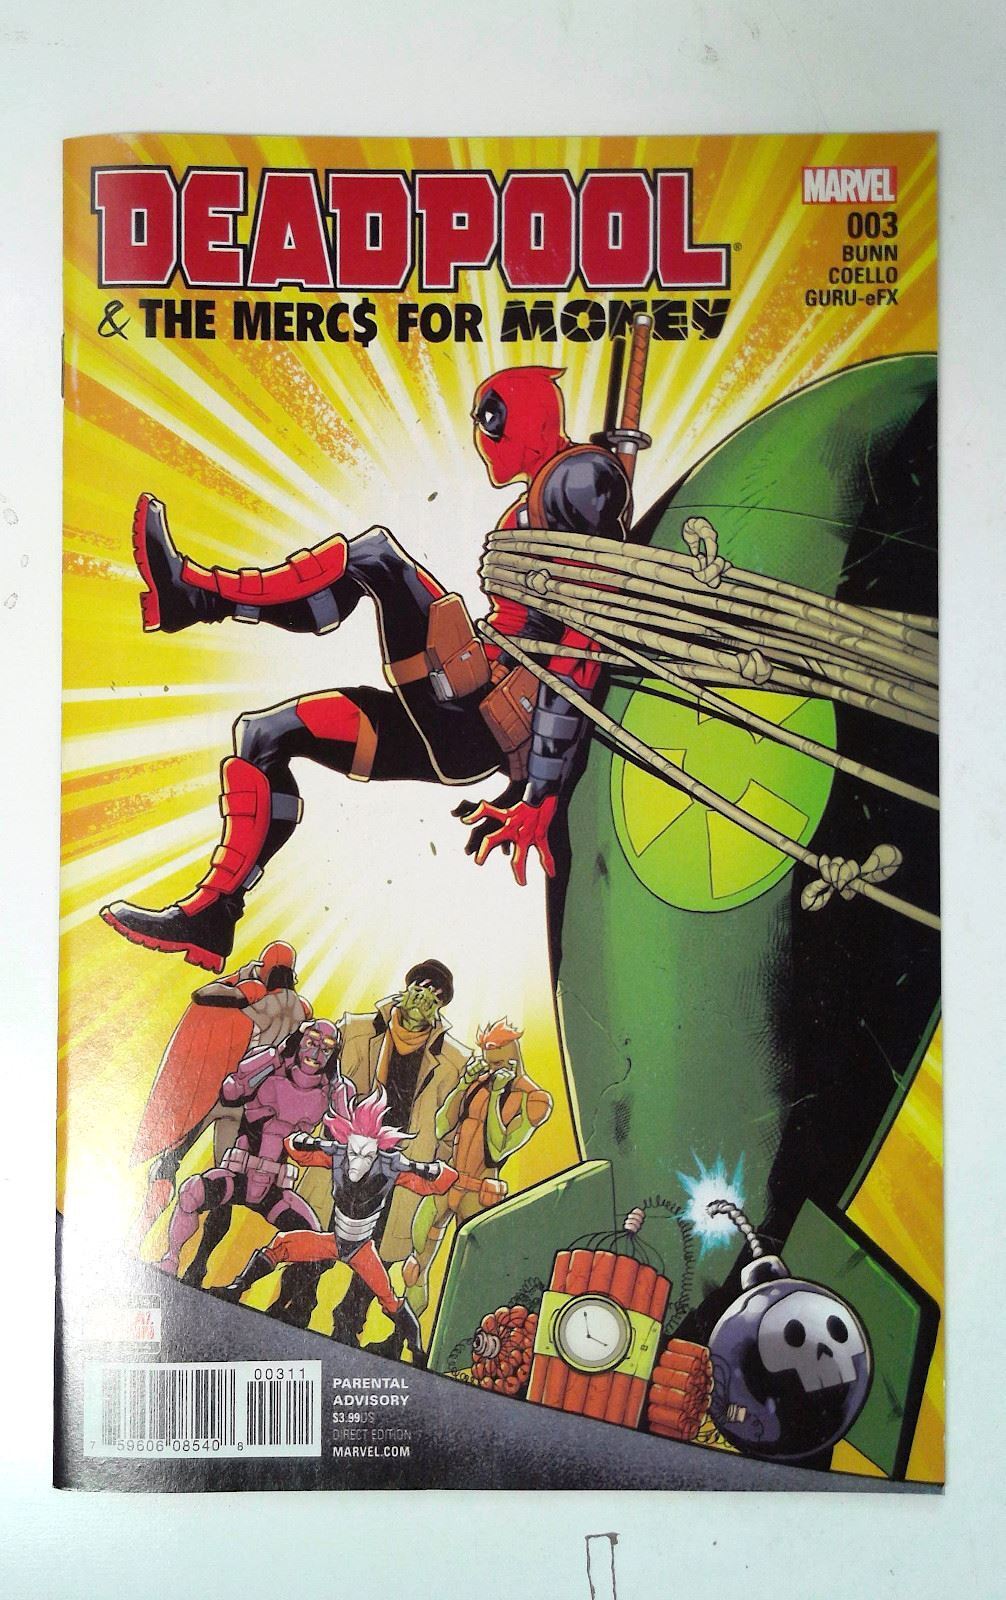 2016 Deadpool & The Mercs For Money #3 c Marvel 1st Series Comic Book